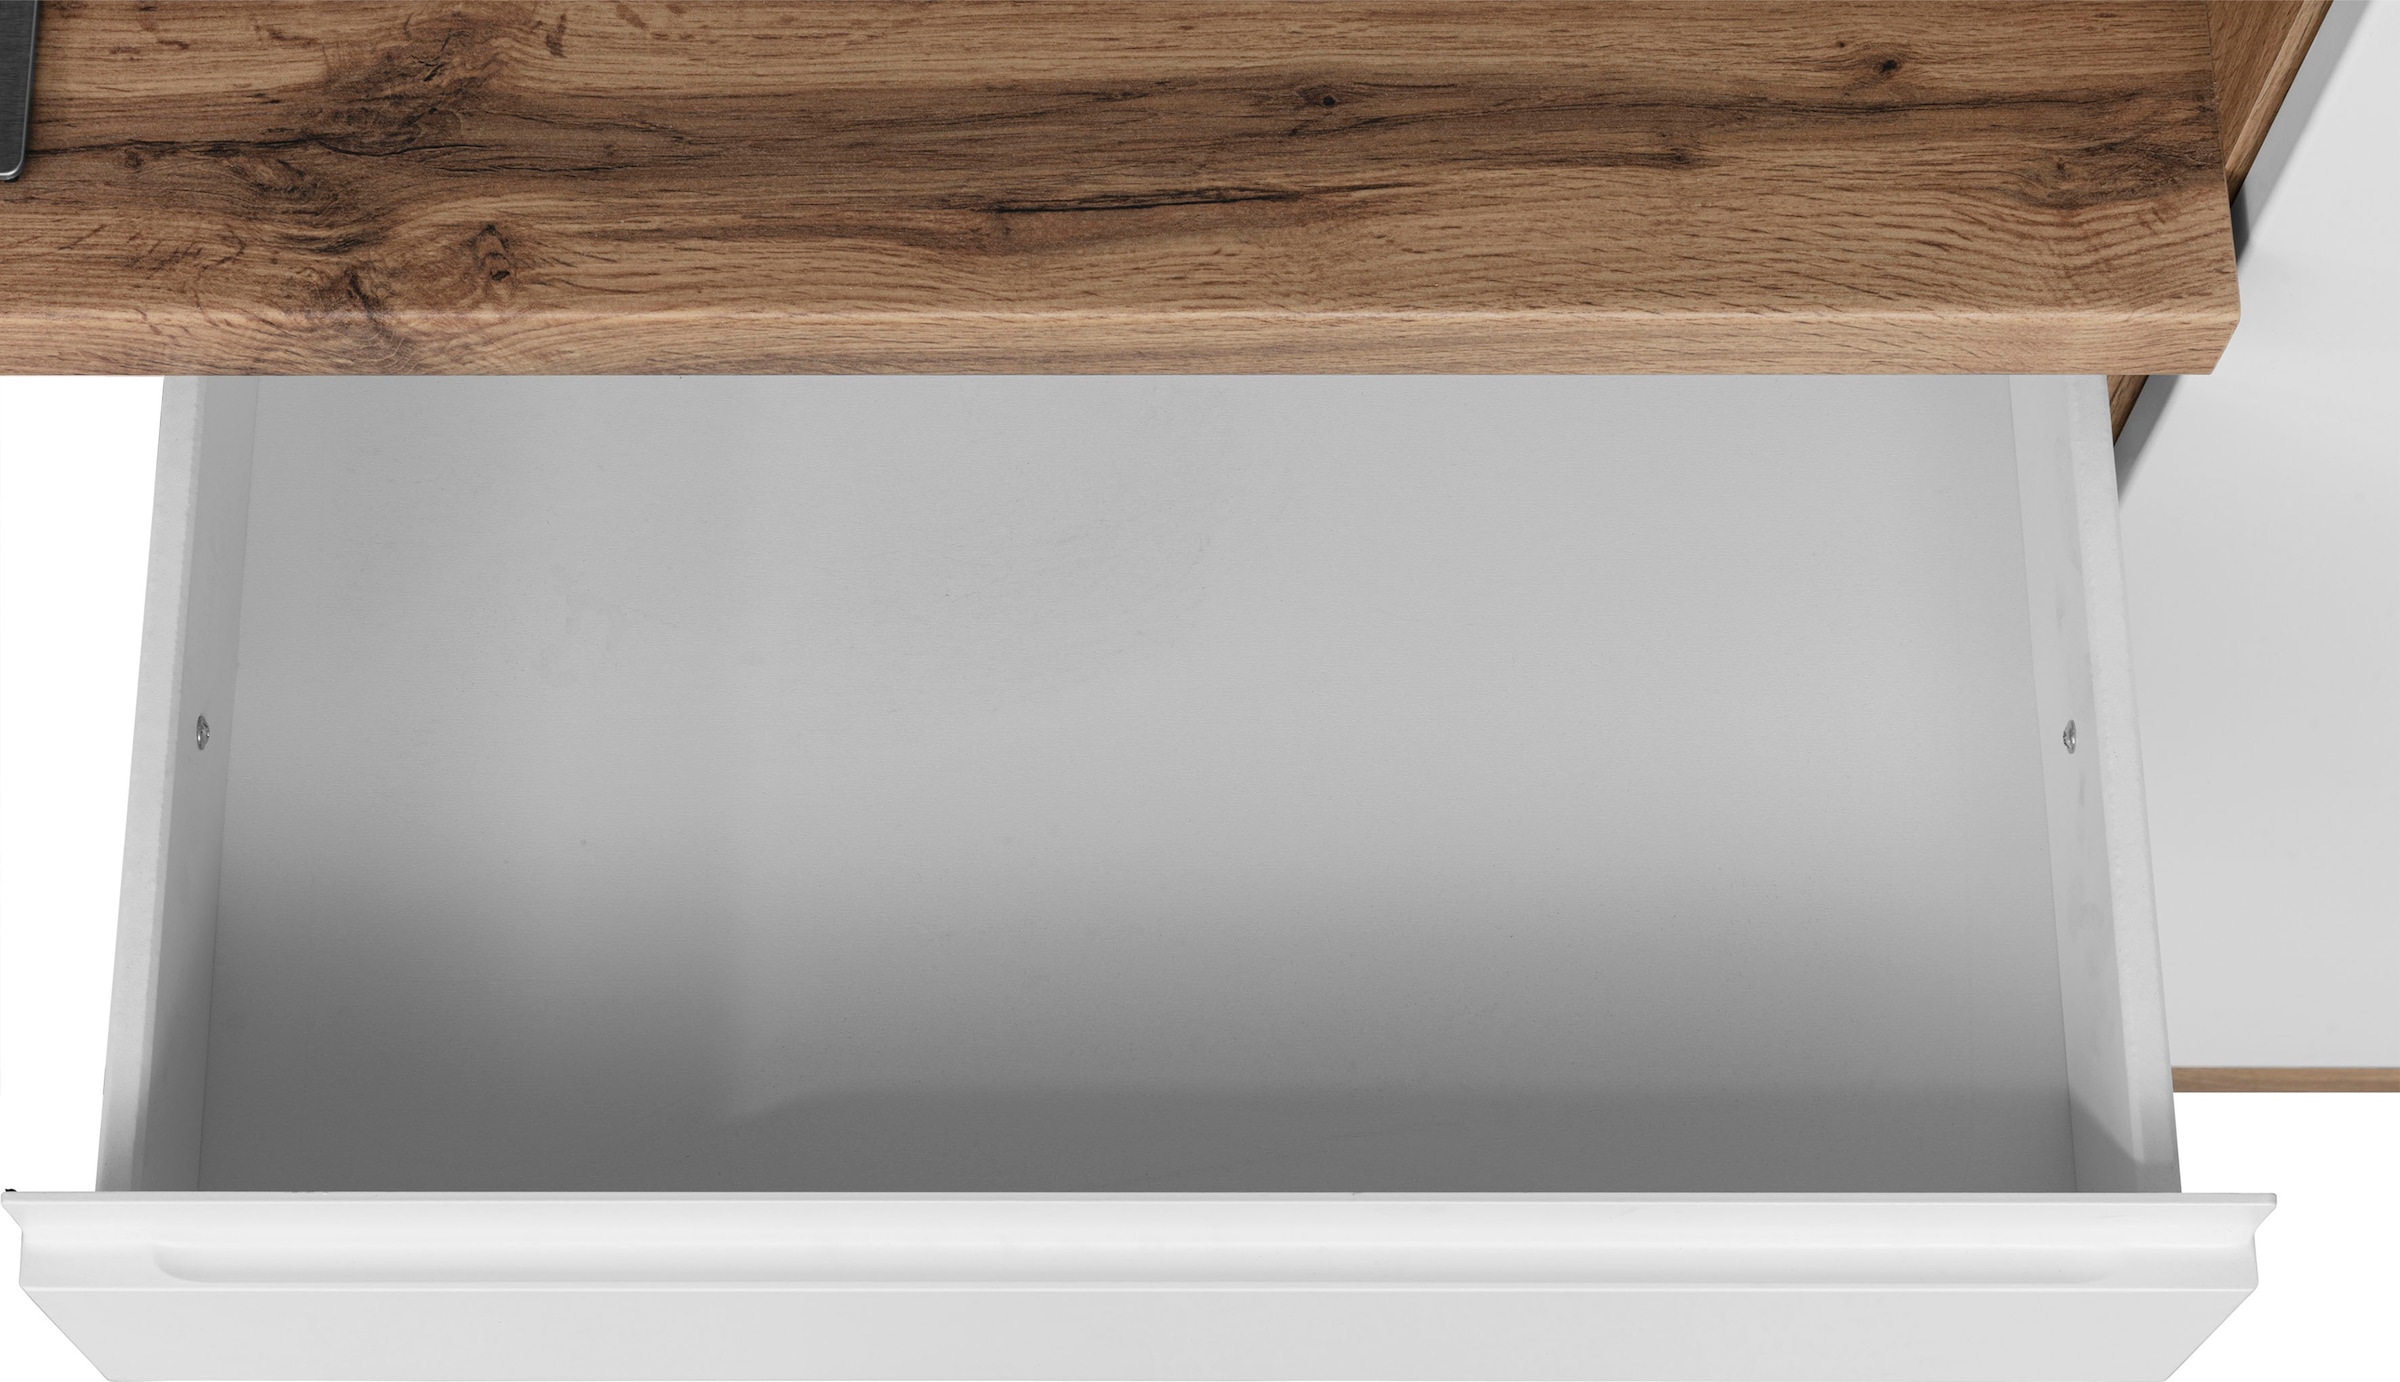 HELD MÖBEL Küche »Bruneck«, 380cm breit, wahlweise mit oder ohne E-Geräte, hochwertige  MDF-Fronten auf Raten kaufen